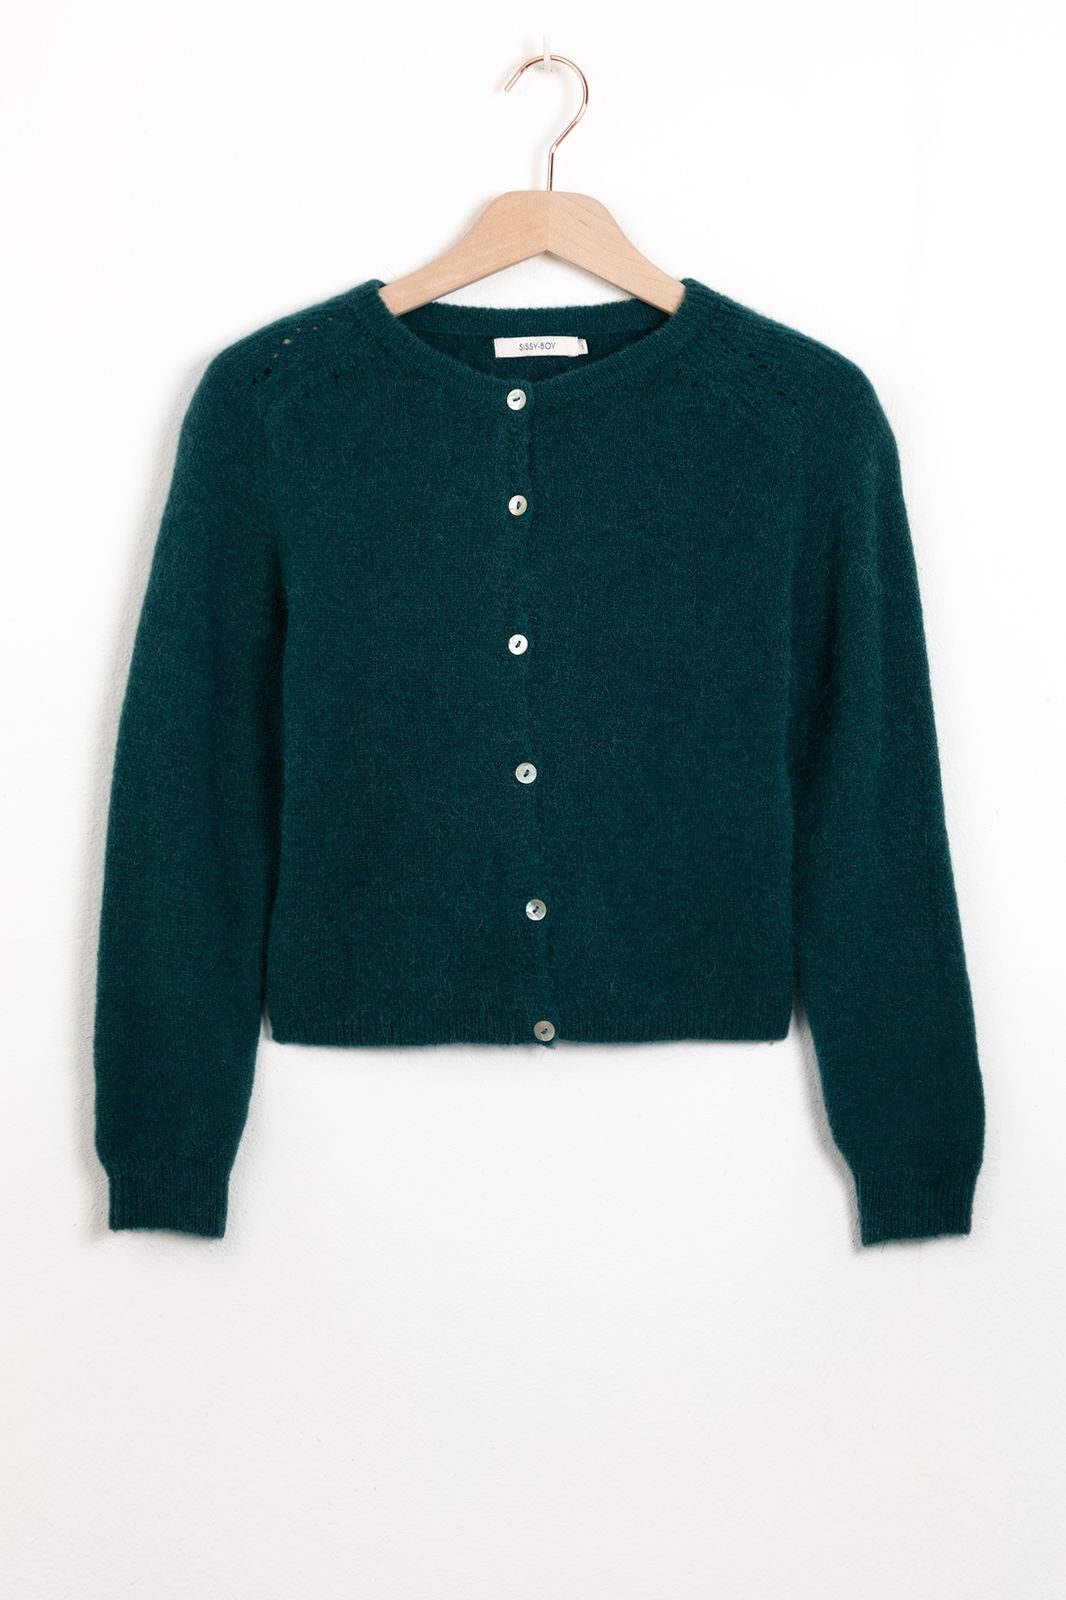 Gilet tricoté avec boutons - bleu vert